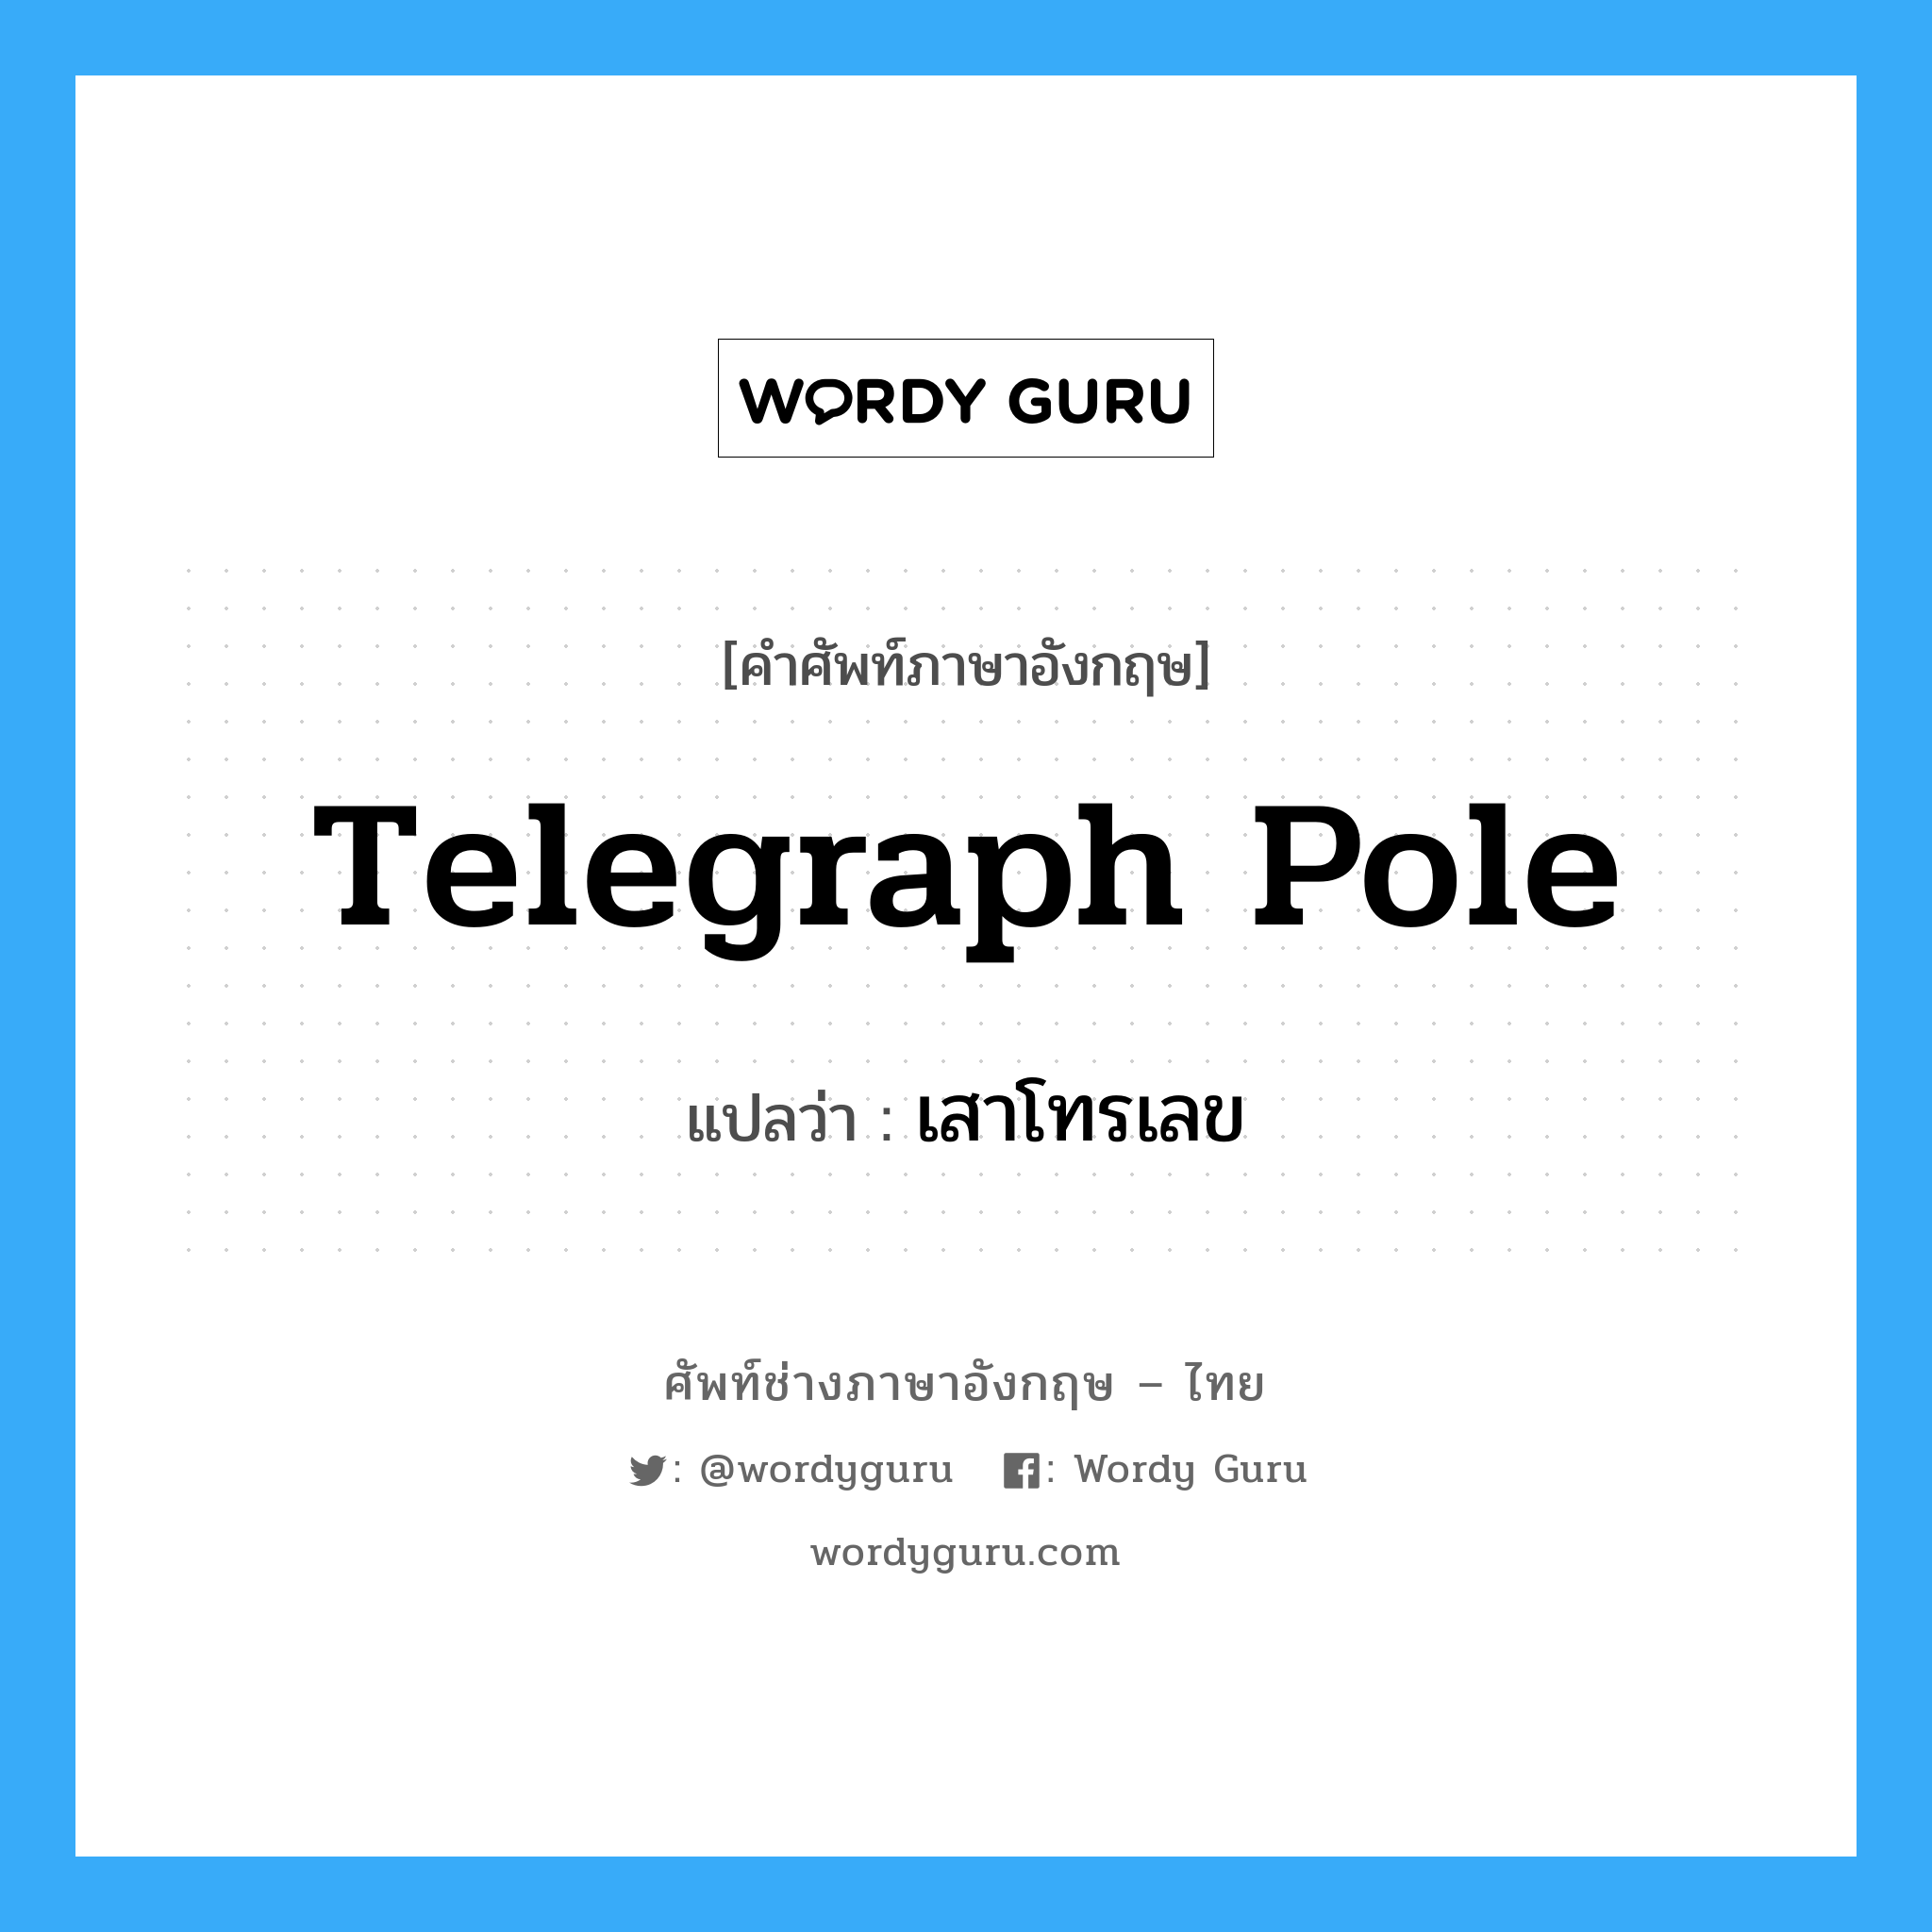 เสาโทรเลข ภาษาอังกฤษ?, คำศัพท์ช่างภาษาอังกฤษ - ไทย เสาโทรเลข คำศัพท์ภาษาอังกฤษ เสาโทรเลข แปลว่า telegraph pole